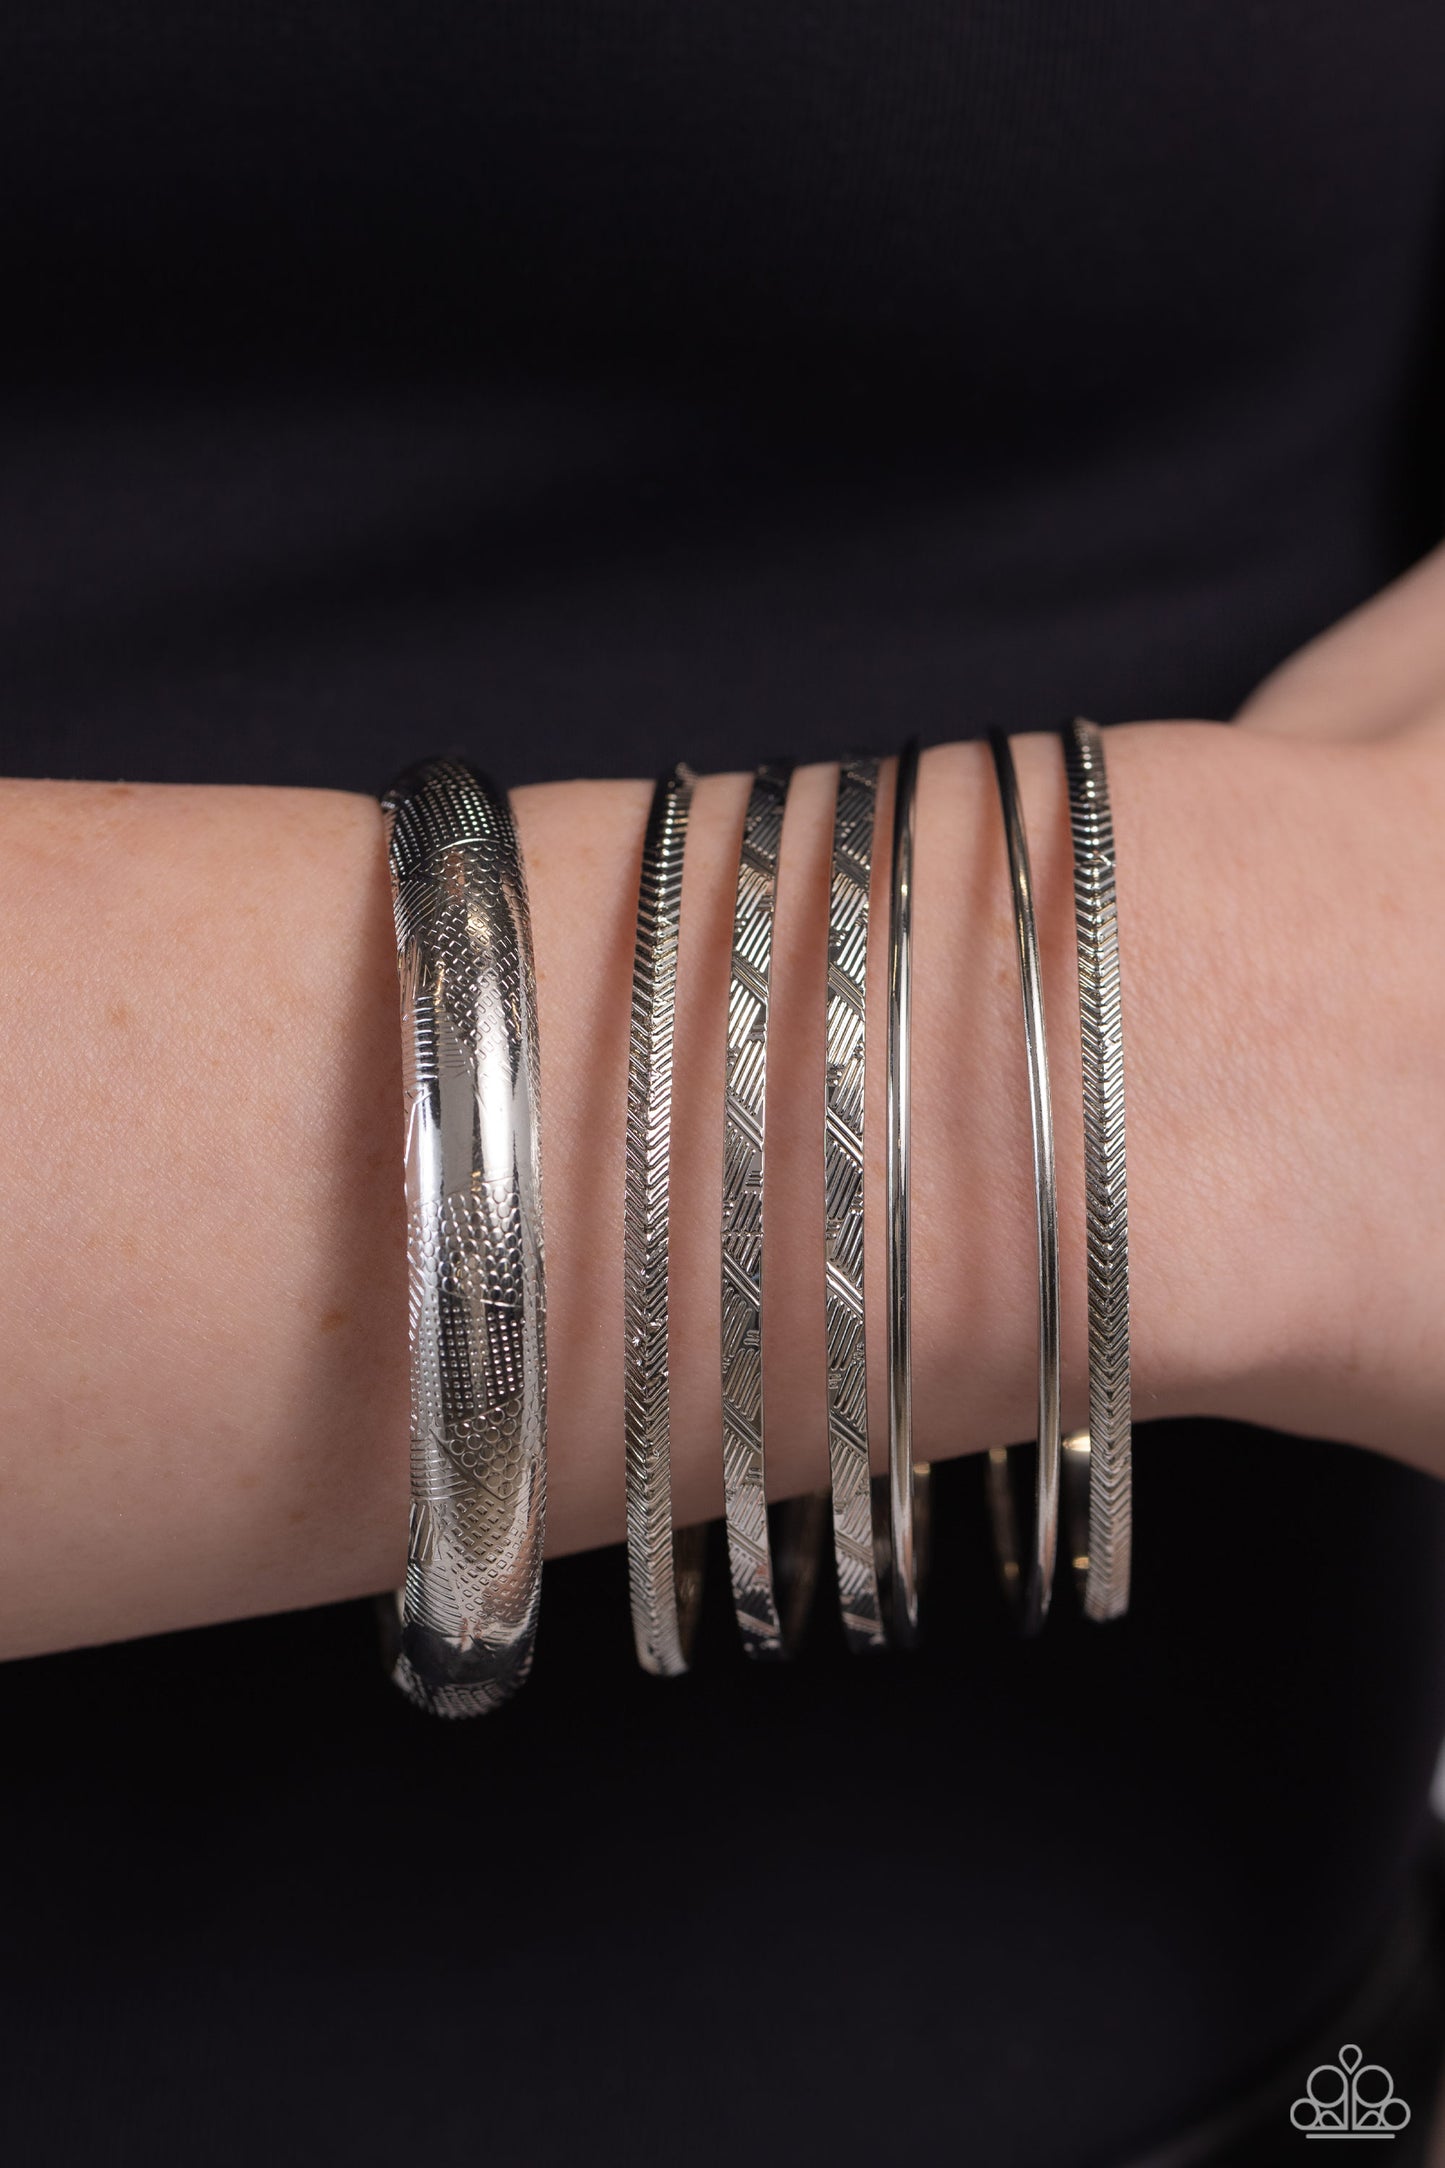 Stackable Stunner - Silver Bracelets